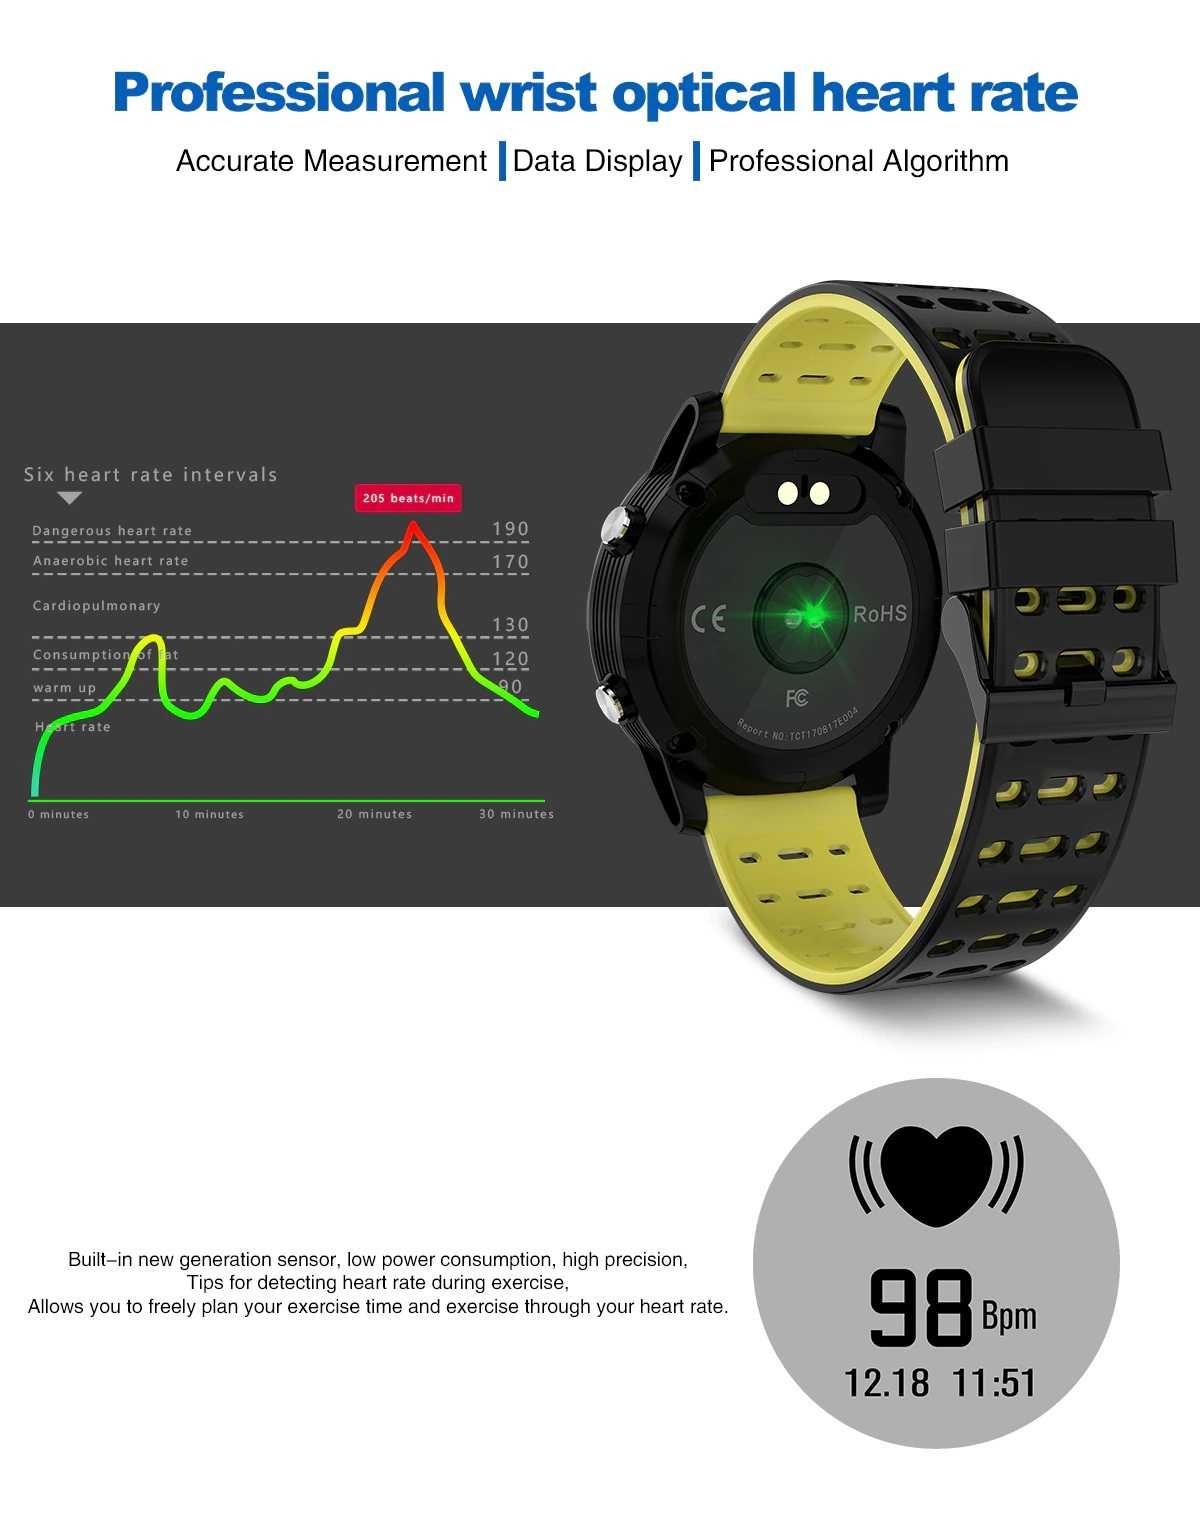 SmartWatch N105 GPS kroki, dystans i kalorie, monitor tętna i snu.